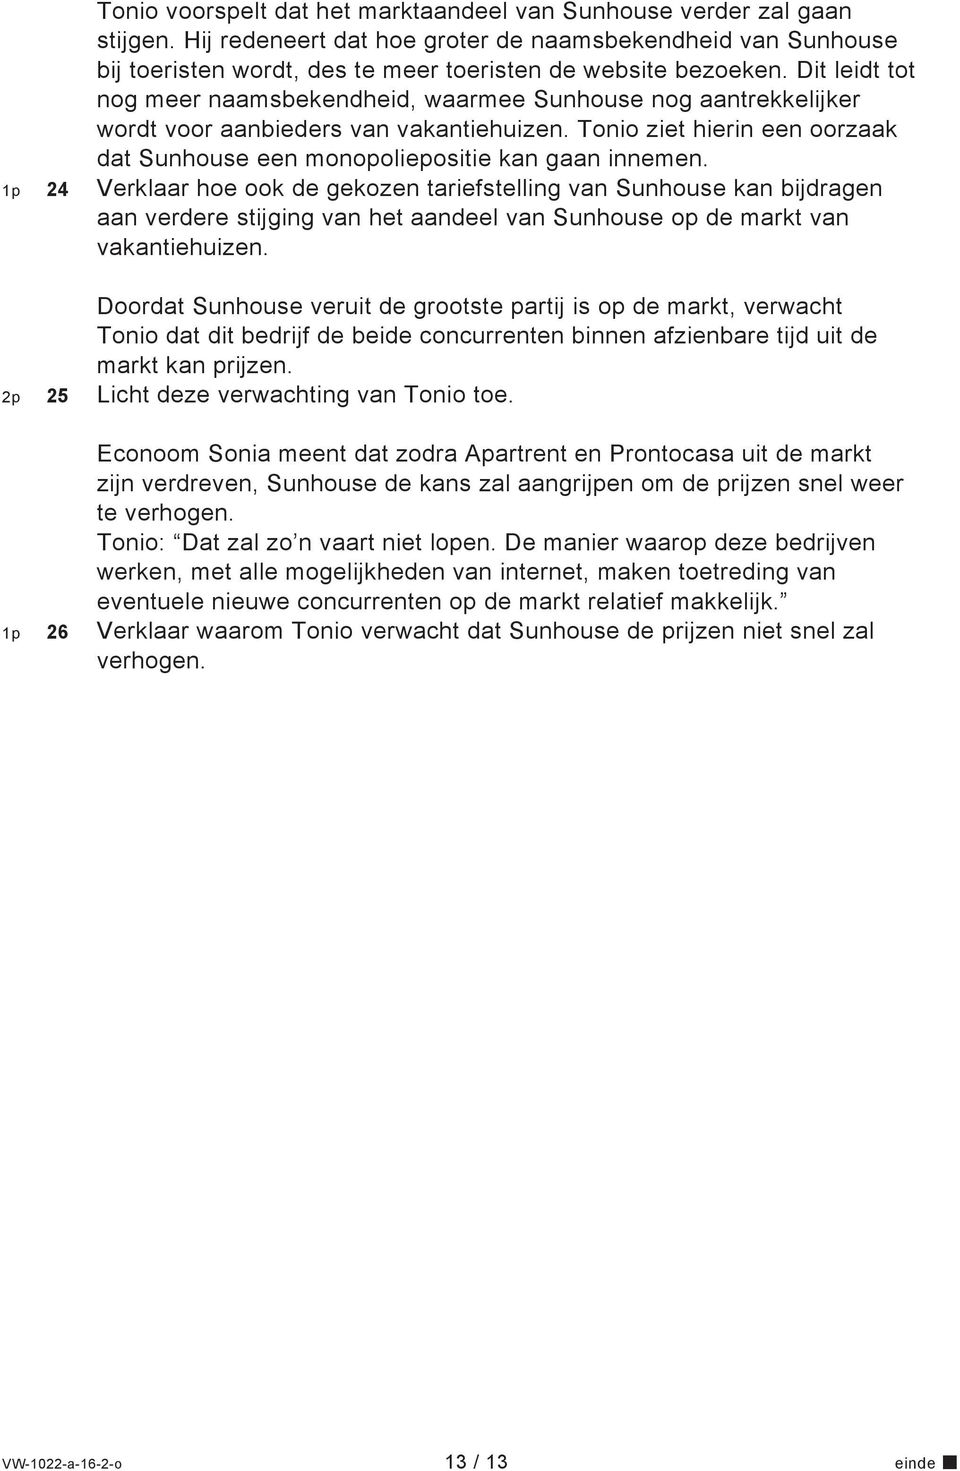 1p 24 Verklaar hoe ook de gekozen tariefstelling van Sunhouse kan bijdragen aan verdere stijging van het aandeel van Sunhouse op de markt van vakantiehuizen.